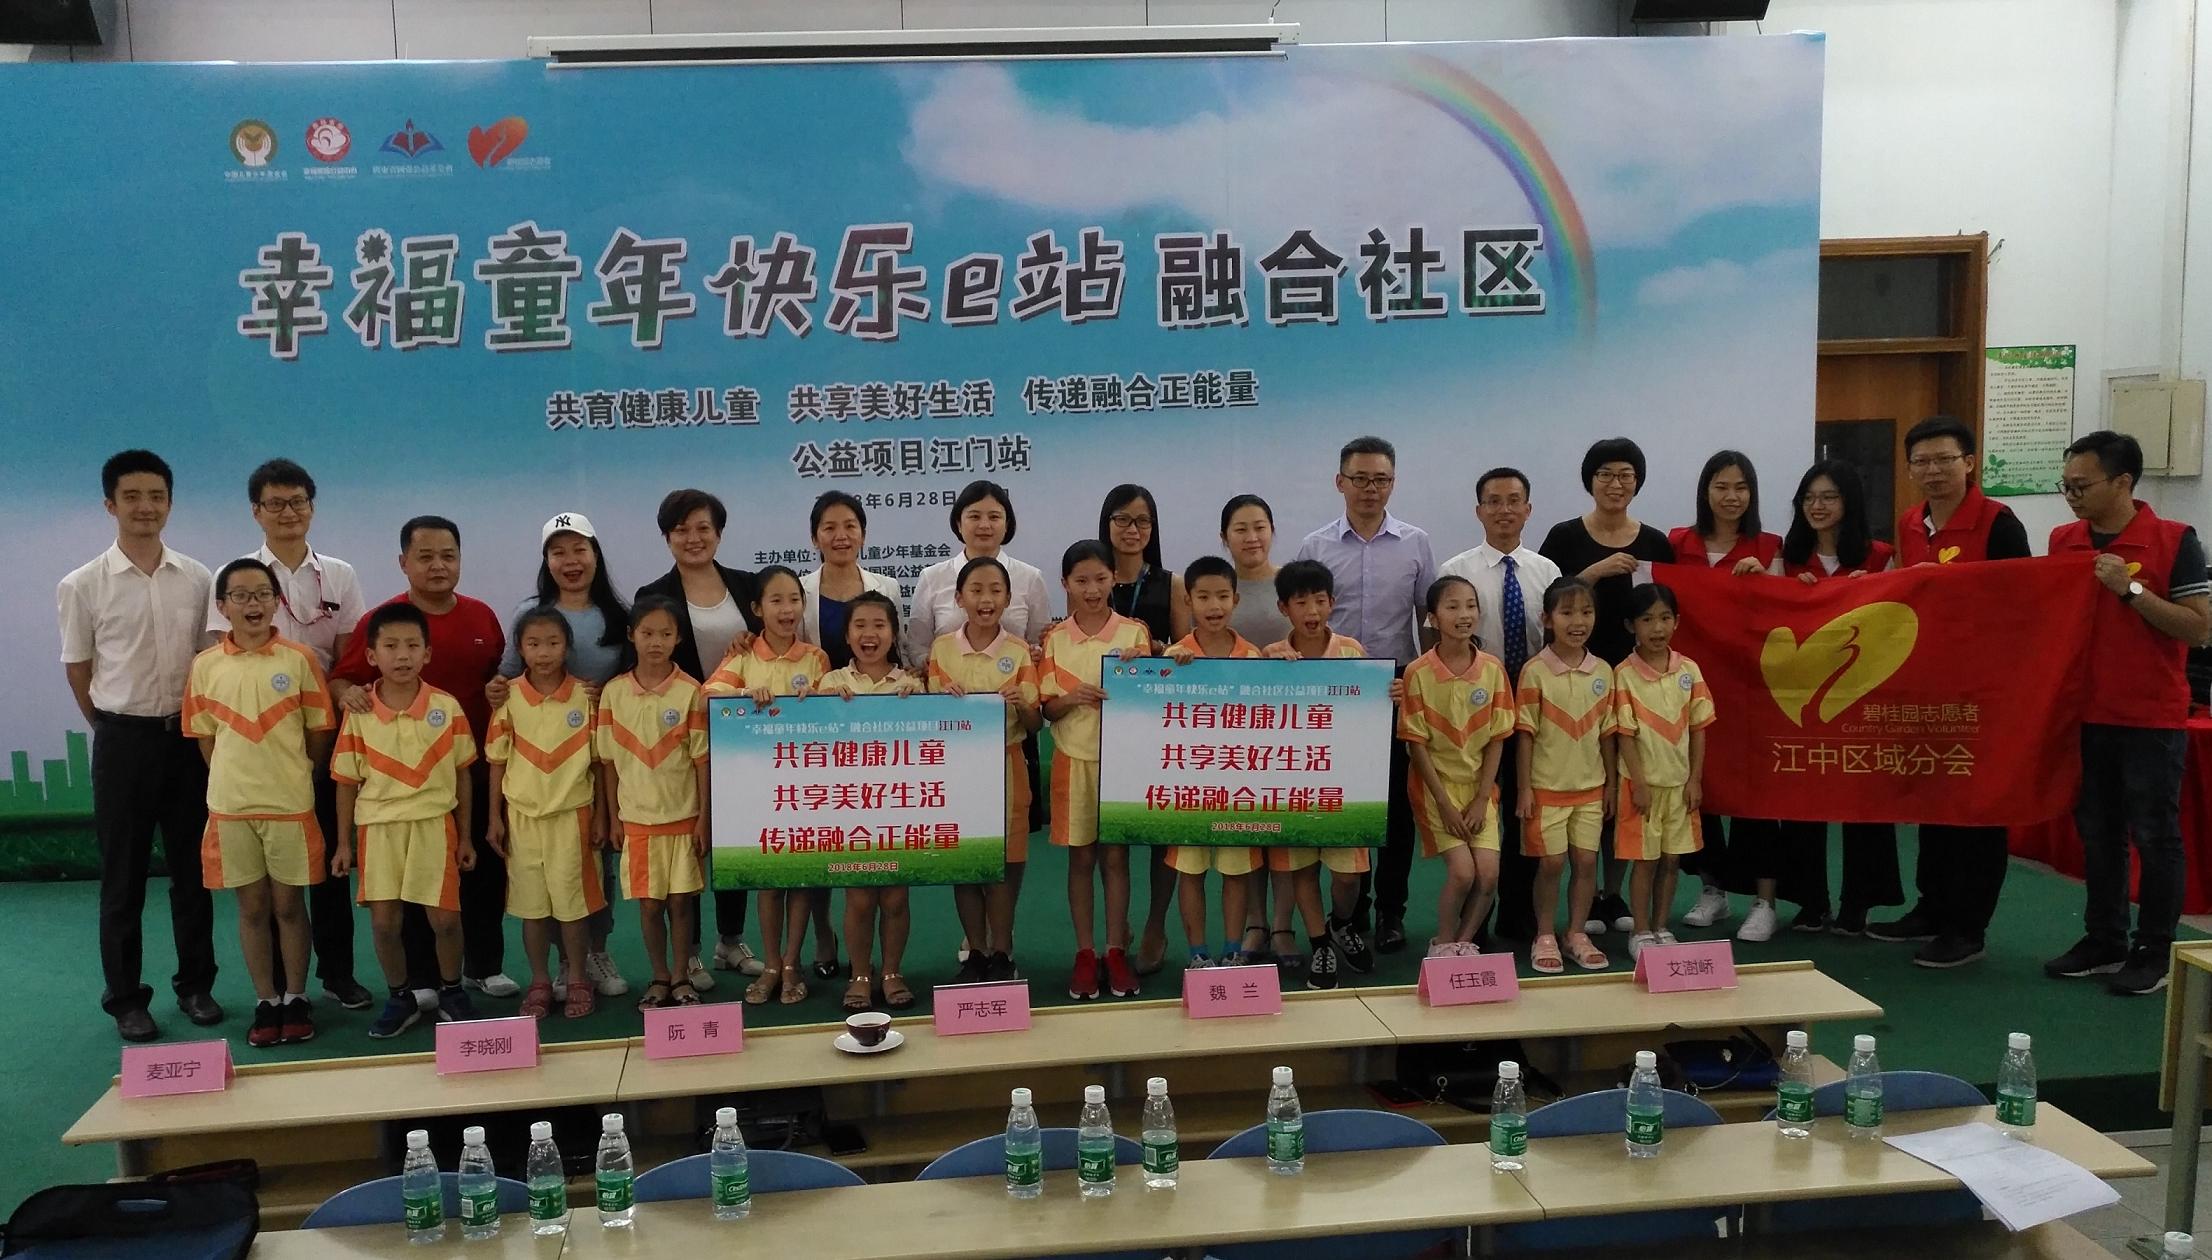 中国儿童少年基金会“幸福童年快乐e站” 融合社区公益项目江门站——第六站